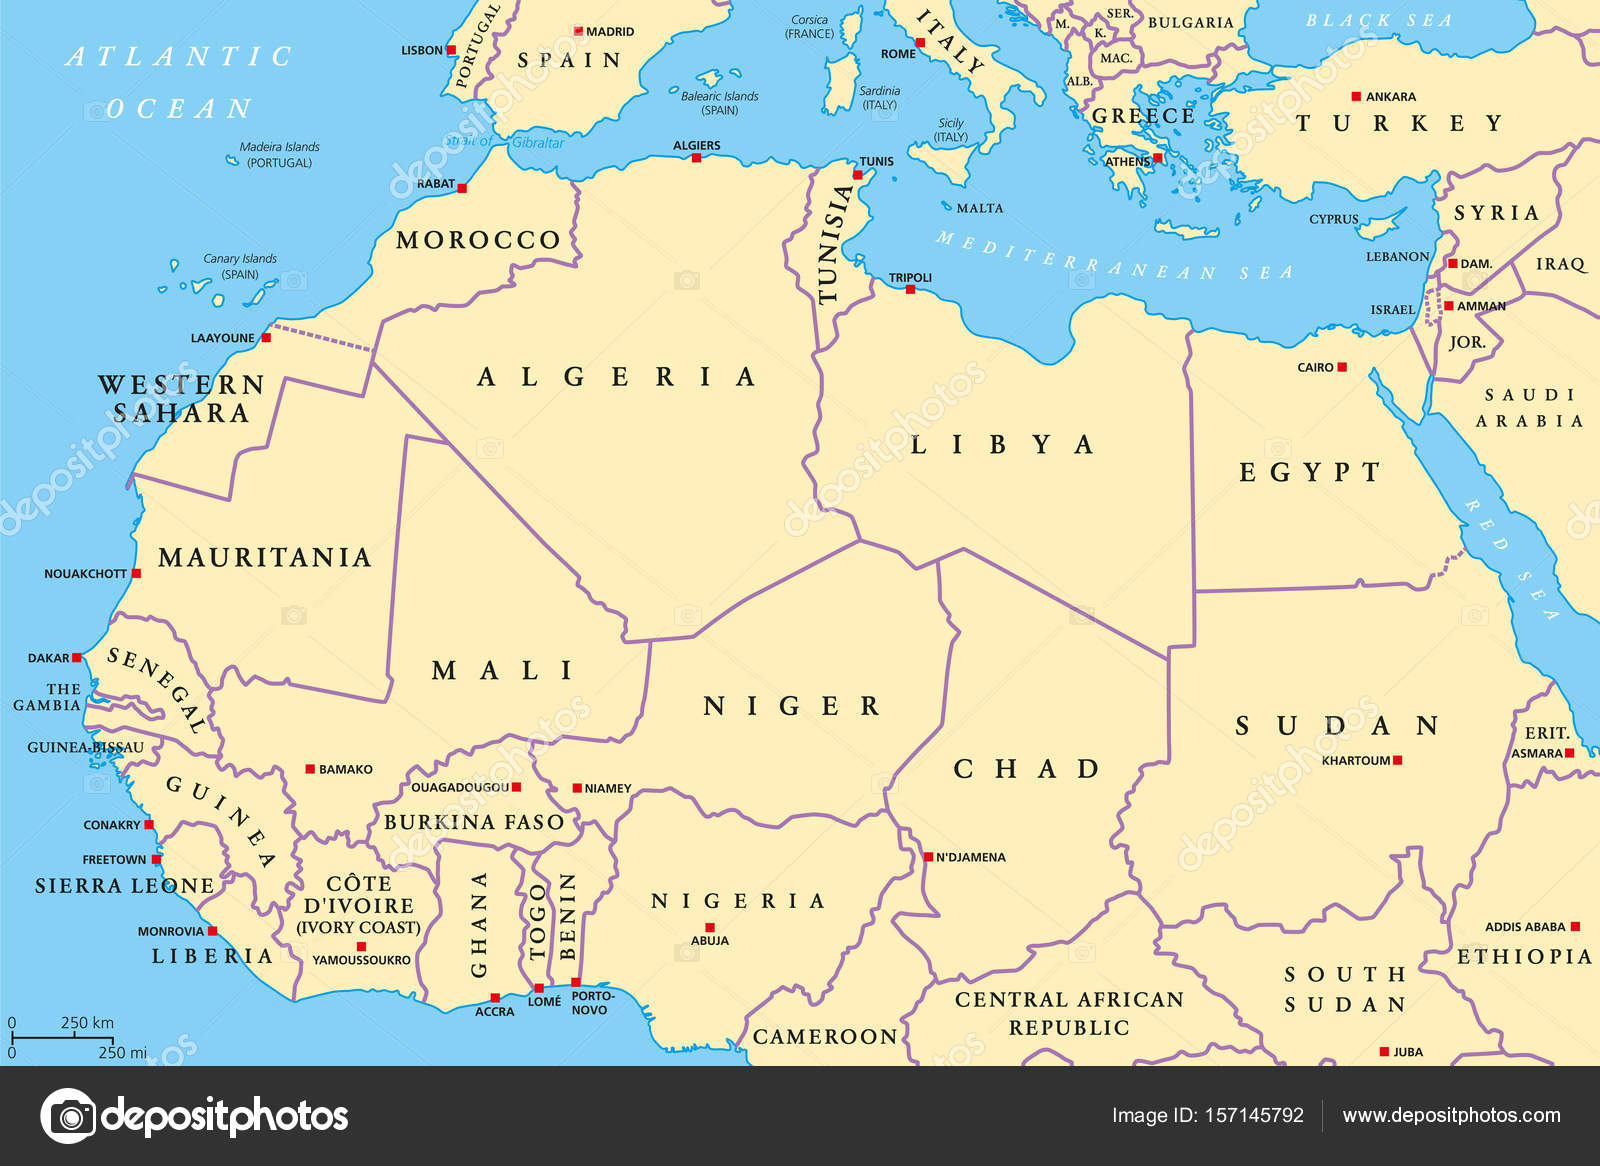 térkép észak afrika Észak afrikai országok politikai térképe — Stock Vektor © Furian  térkép észak afrika